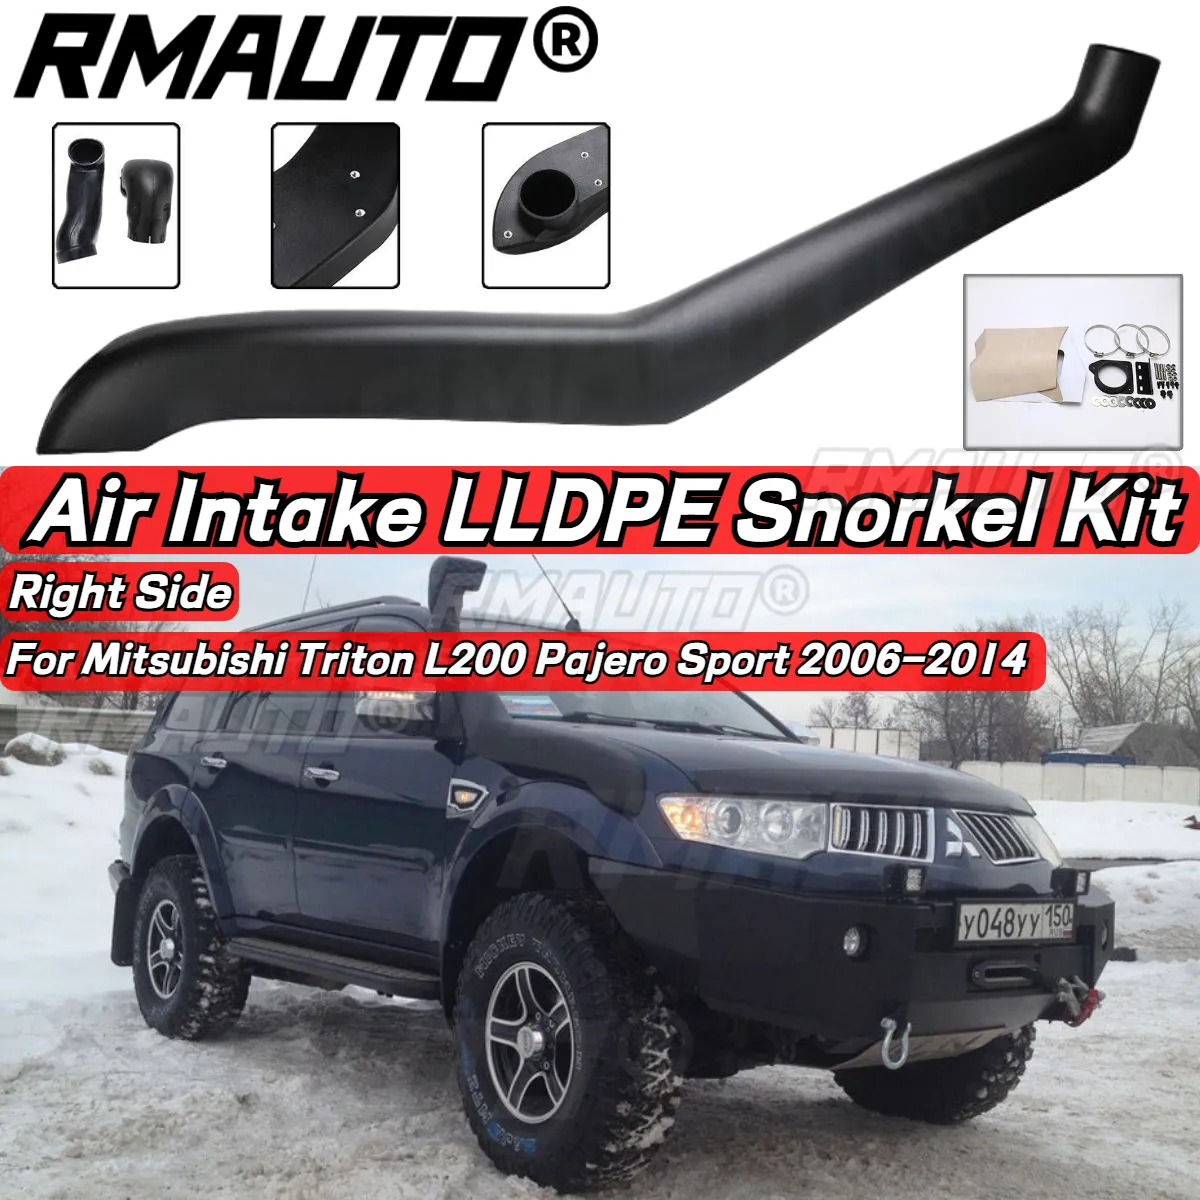 ชุดอุปกรณ์ดำน้ำในรถยนต์ rmauto 4x4 LLDPE ชุดตัวท่ออากาศเข้าด้านขวาสำหรับ MITSUBISHI Triton L200 Pajero Sport 2006-2014